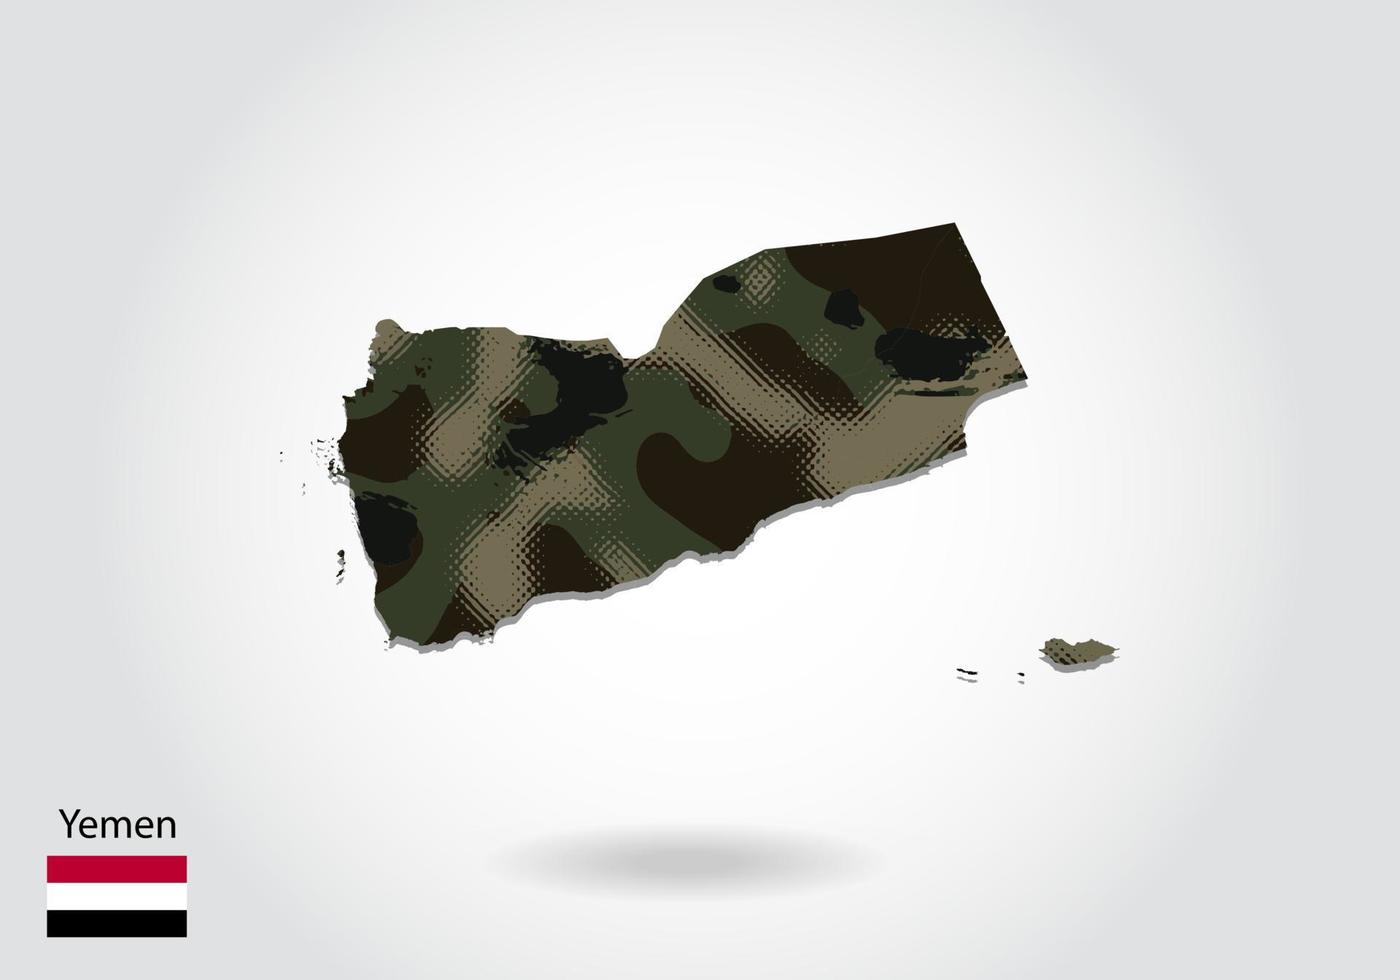 jemen kaart met camouflagepatroon, bos - groene textuur in kaart. militair concept voor leger, soldaat en oorlog. wapenschild, vlag. vector